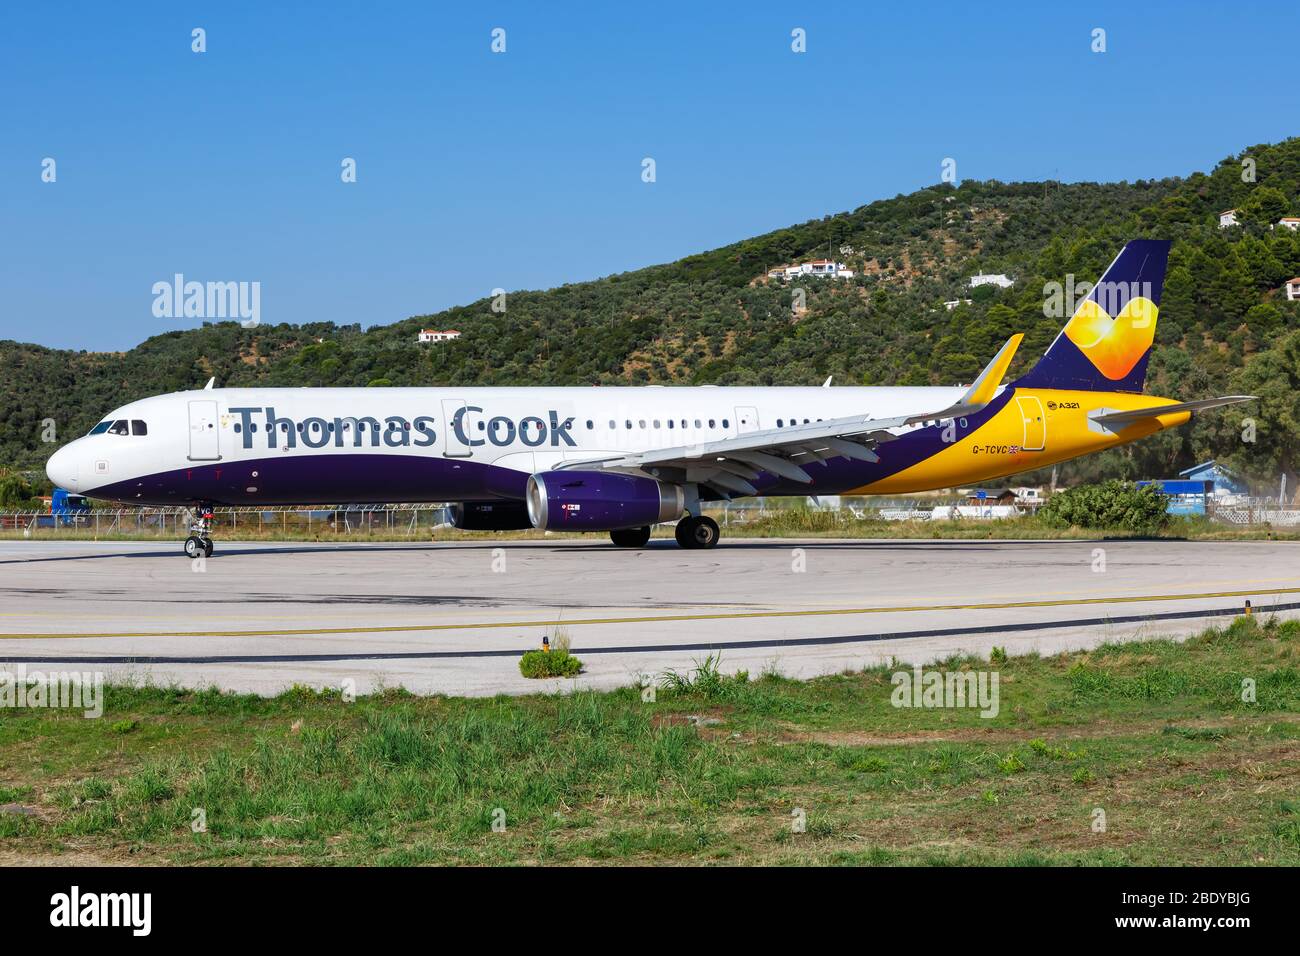 Skiathos, Griechenland – 28. Juli 2019: Thomas Cook Airlines Airbus A321 am Skiathos Flughafen (JSI) in Griechenland. Airbus ist ein europäischer Flugzeughersteller Stockfoto